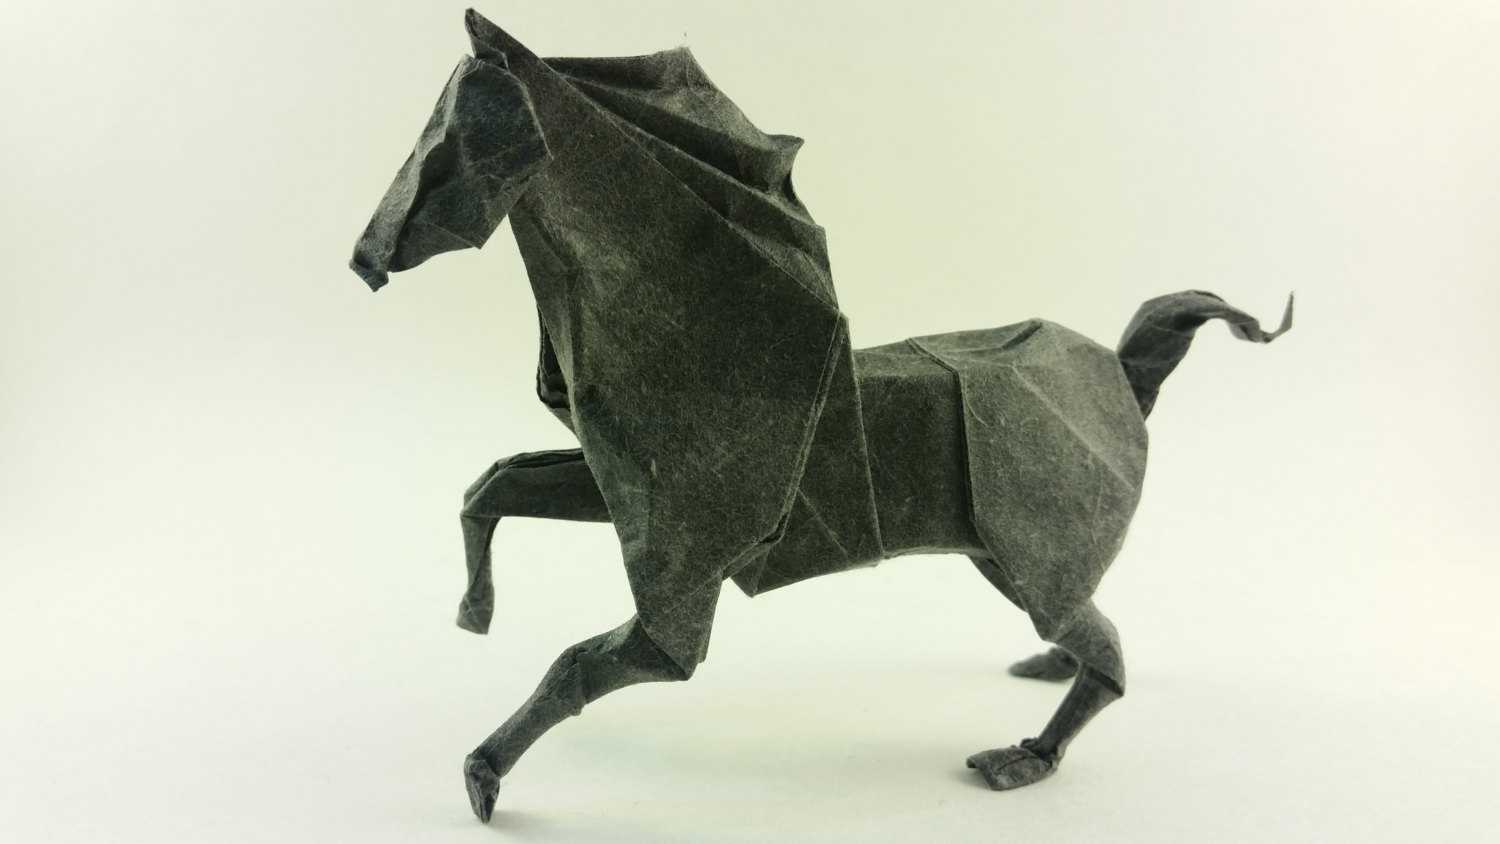 Как сделать объемные оригами - пошаговая инструкция, основы и идеи как делать скульптуры из бумаги